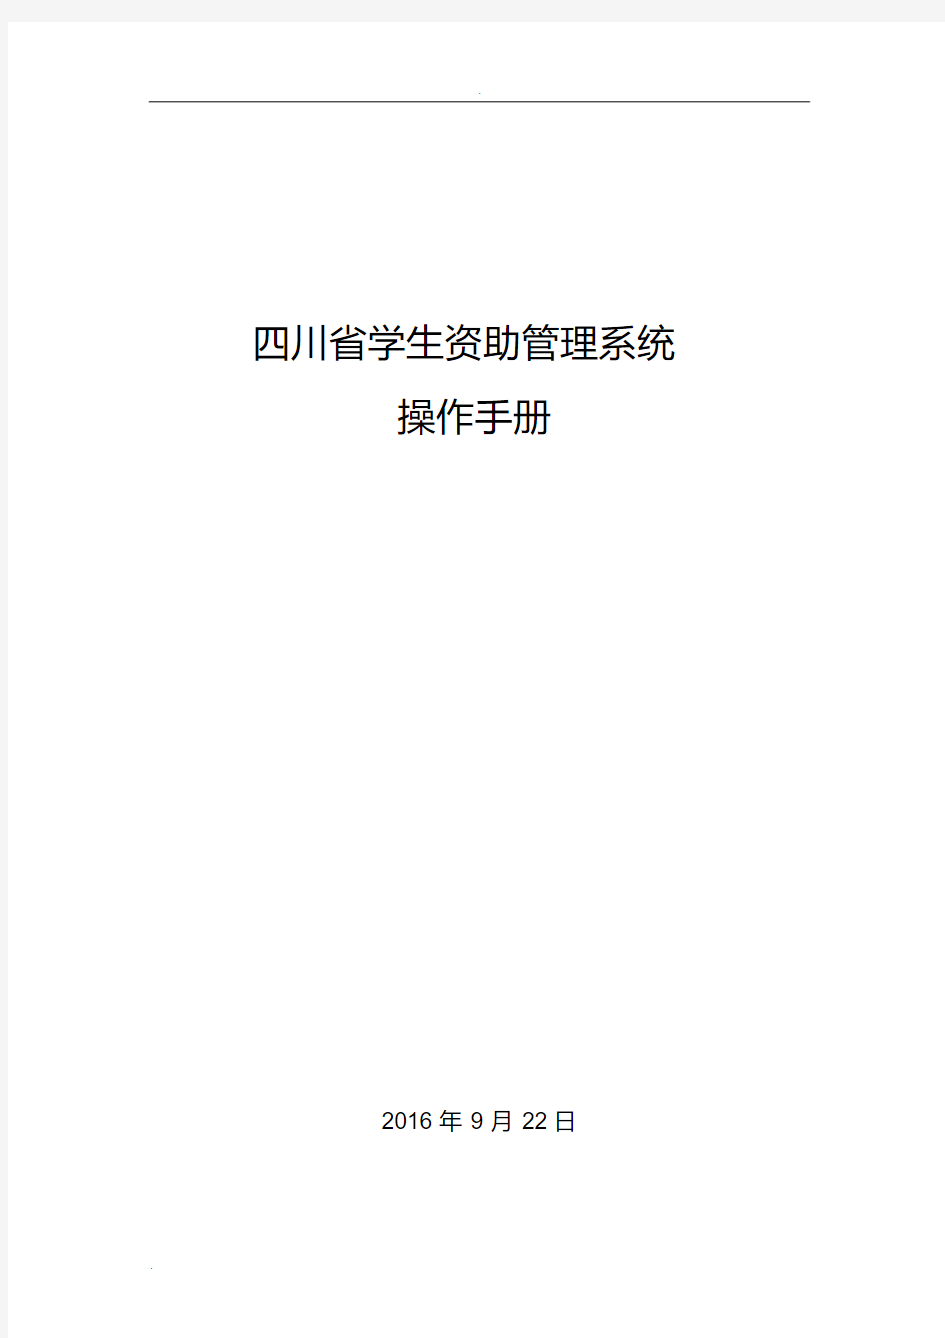 四川省学生资助管理系统操作手册